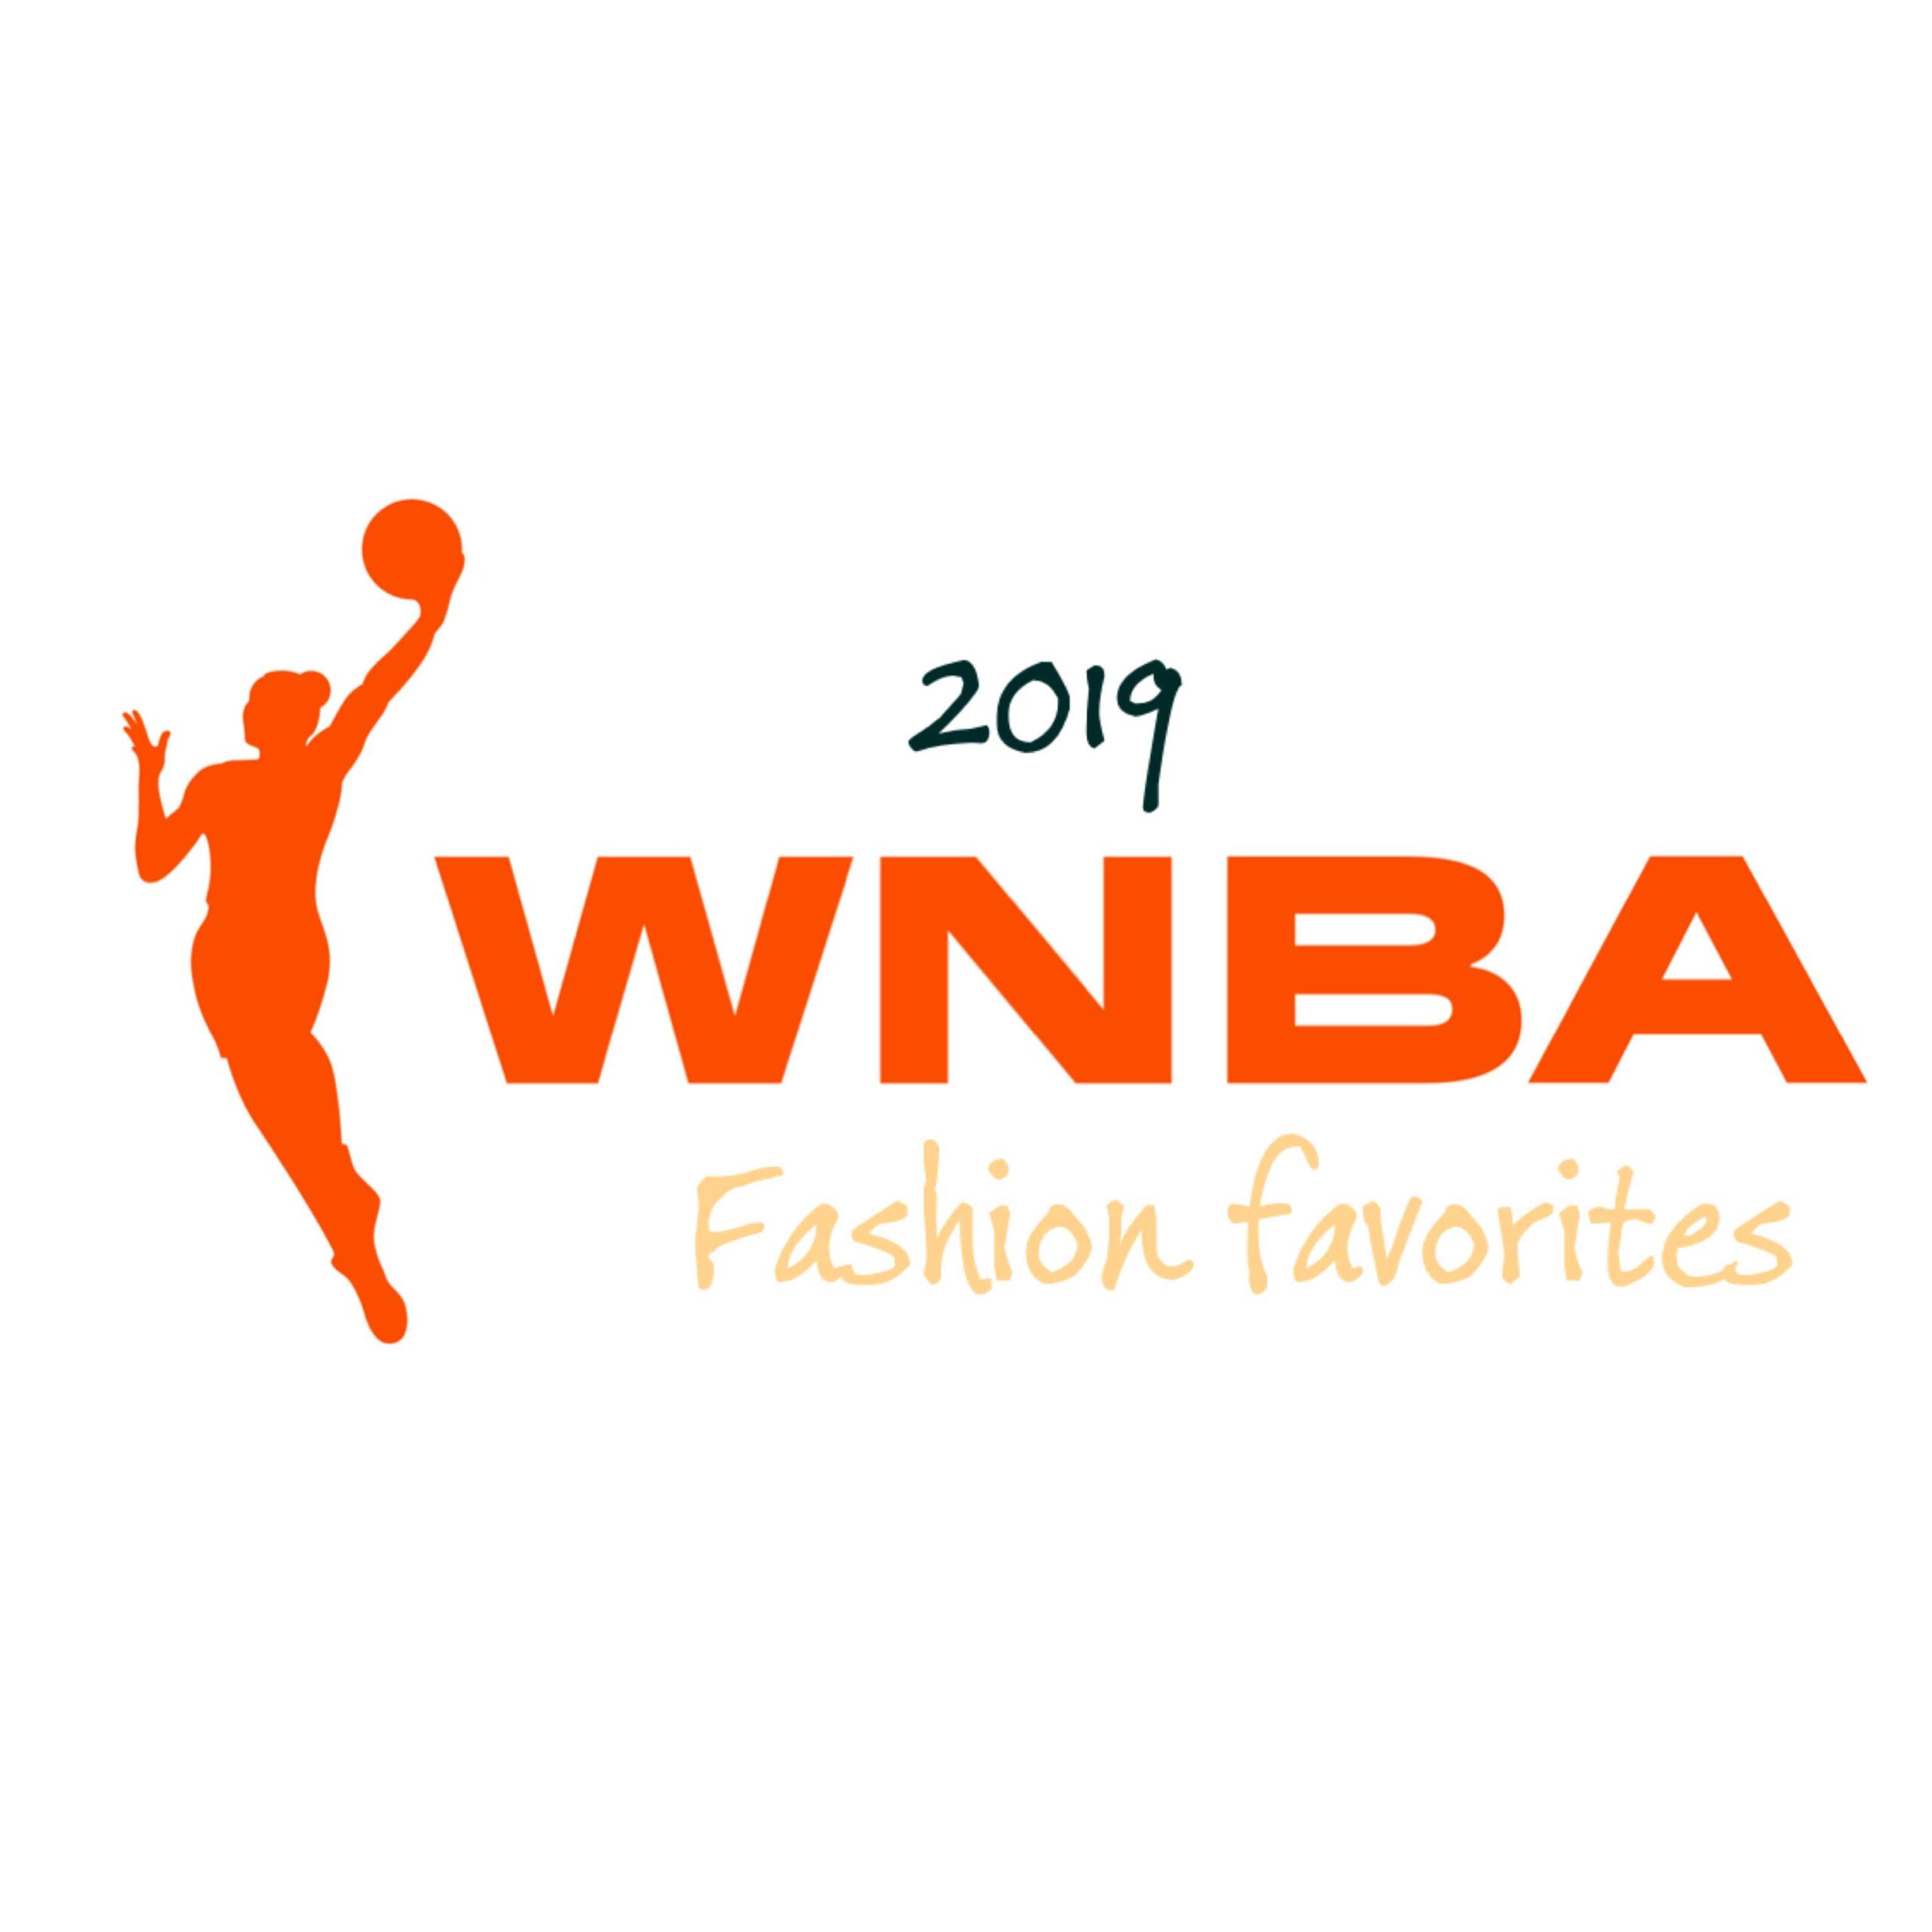  WNBA Fashion Favorites